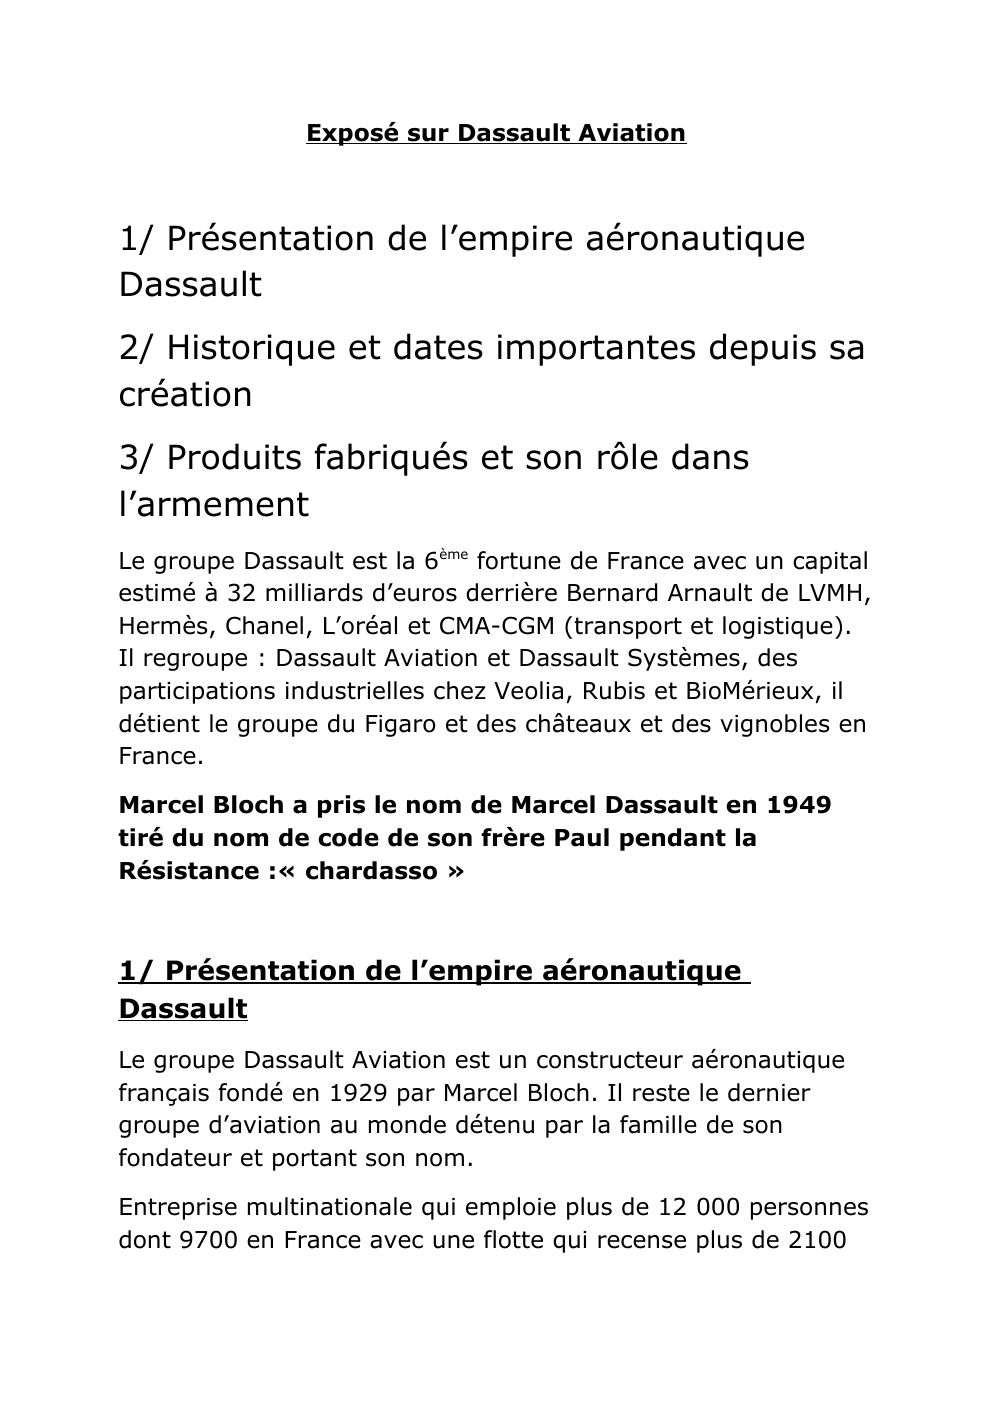 Prévisualisation du document exposé sur dassault aviation